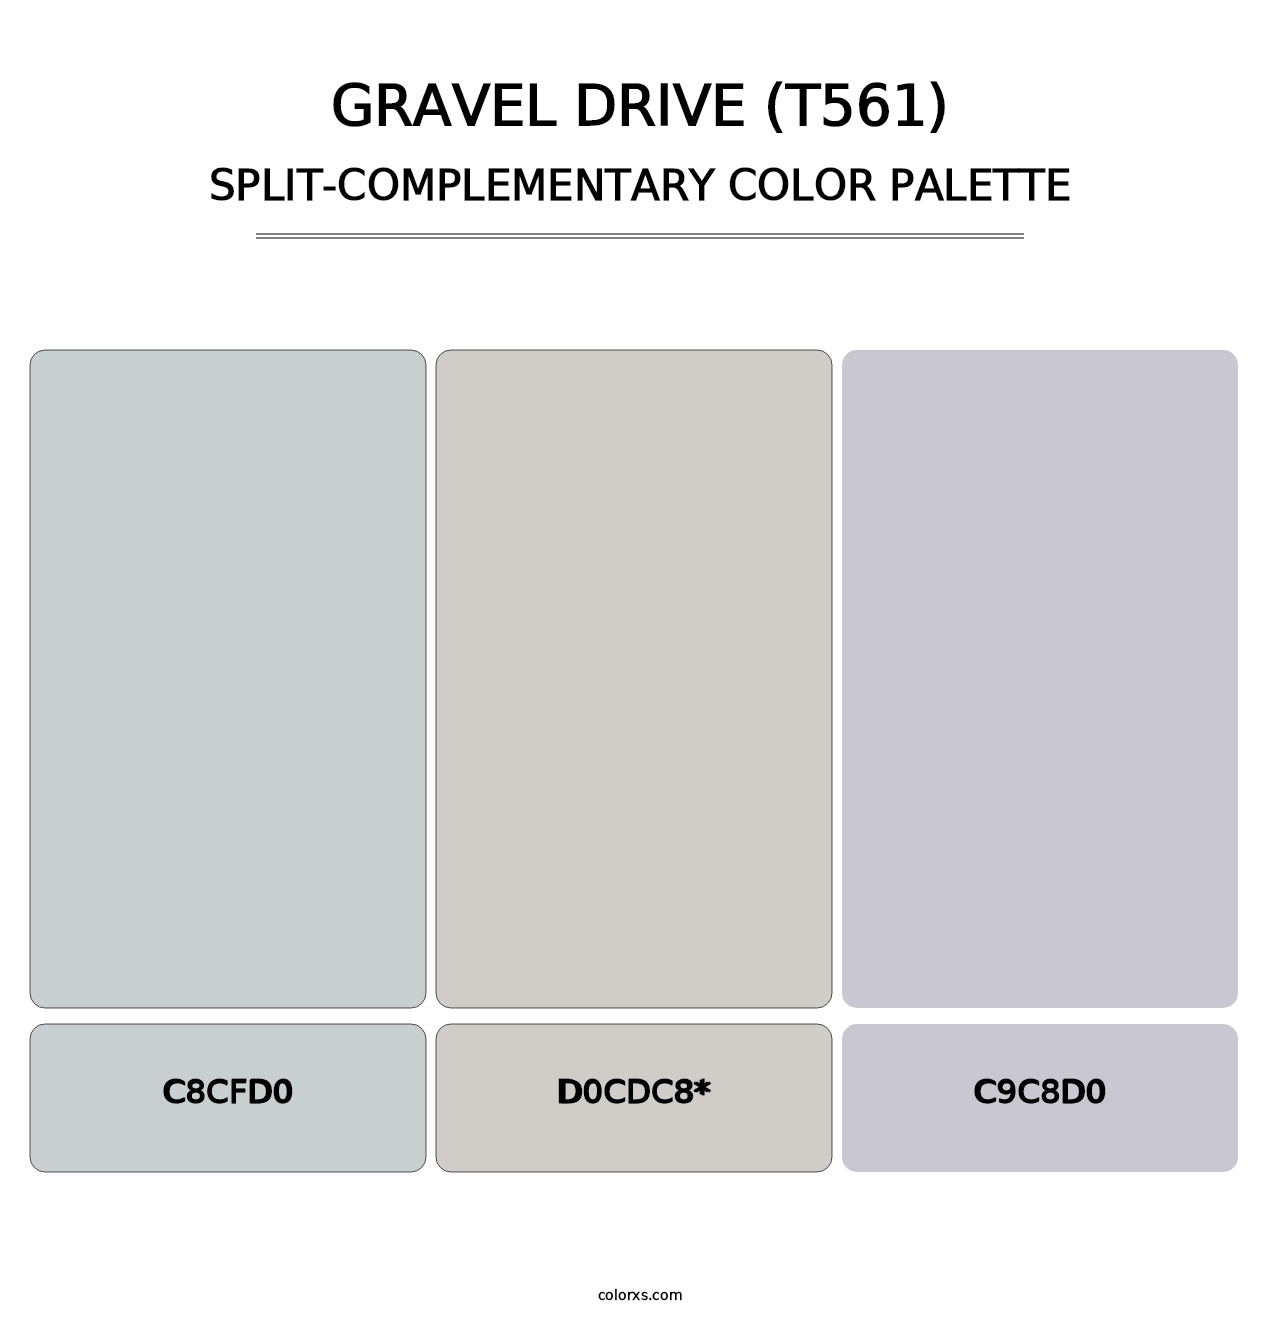 Gravel Drive (T561) - Split-Complementary Color Palette